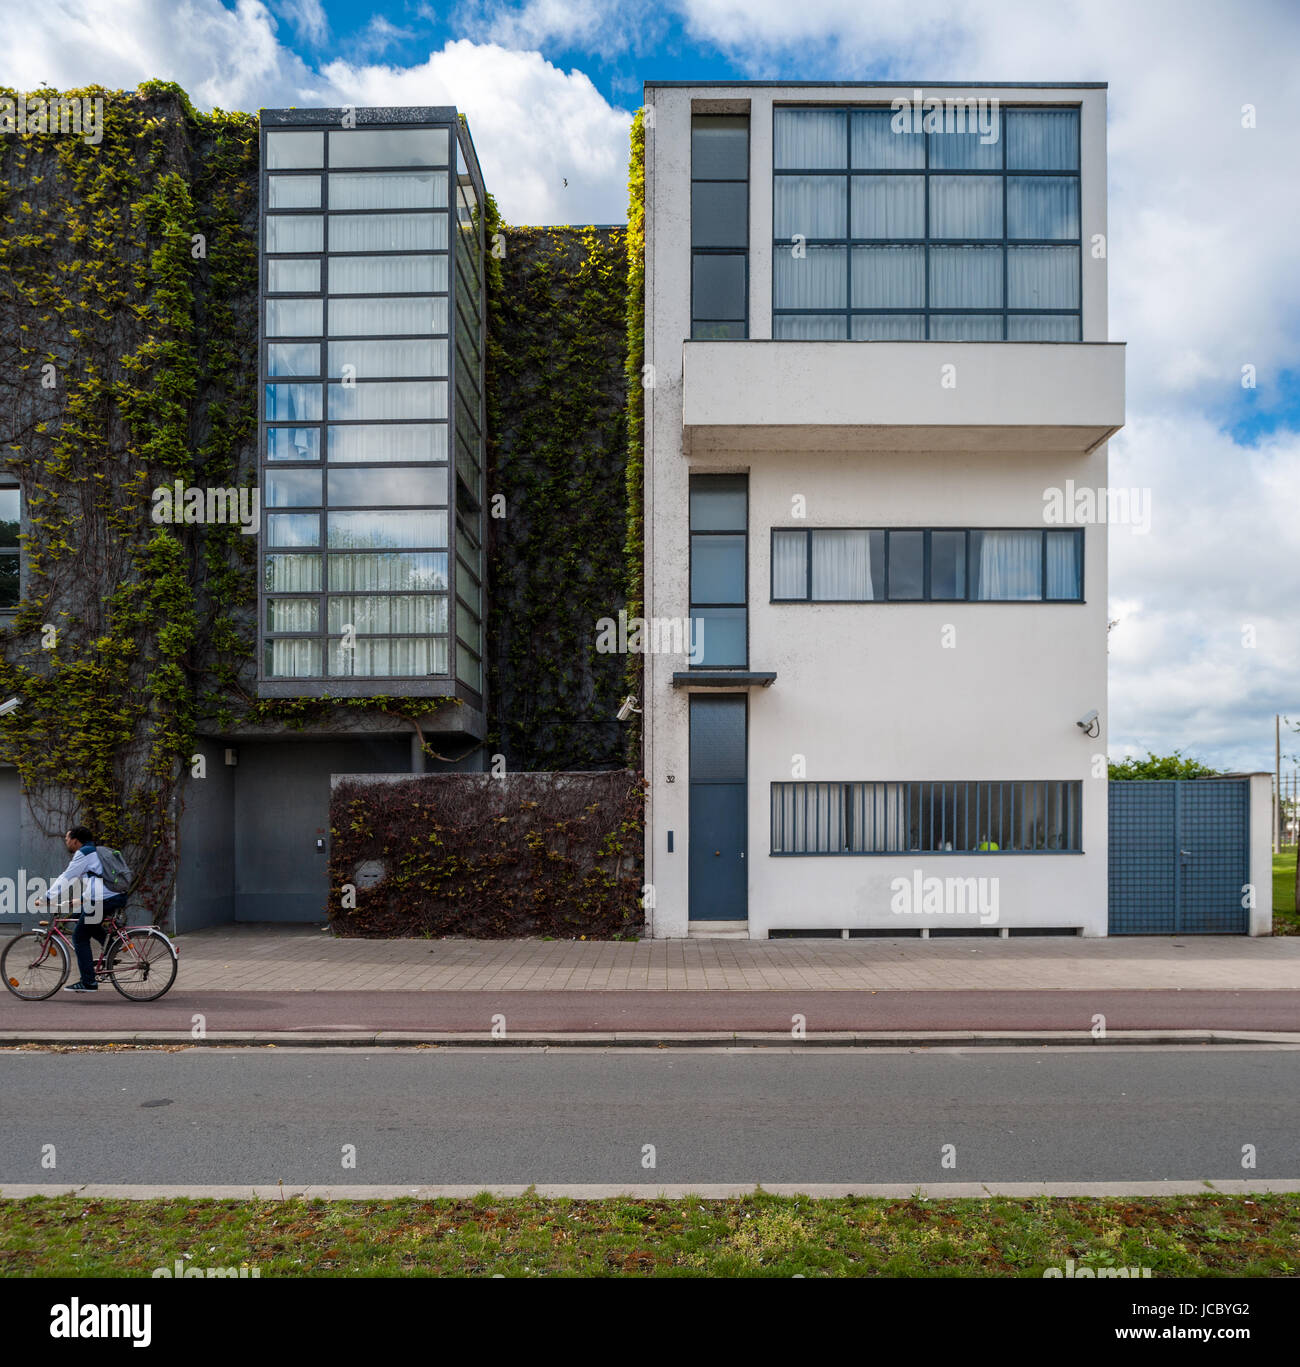 Belgium, Antwerp, Maison Guiette designed by Le Corbusier Stock Photo